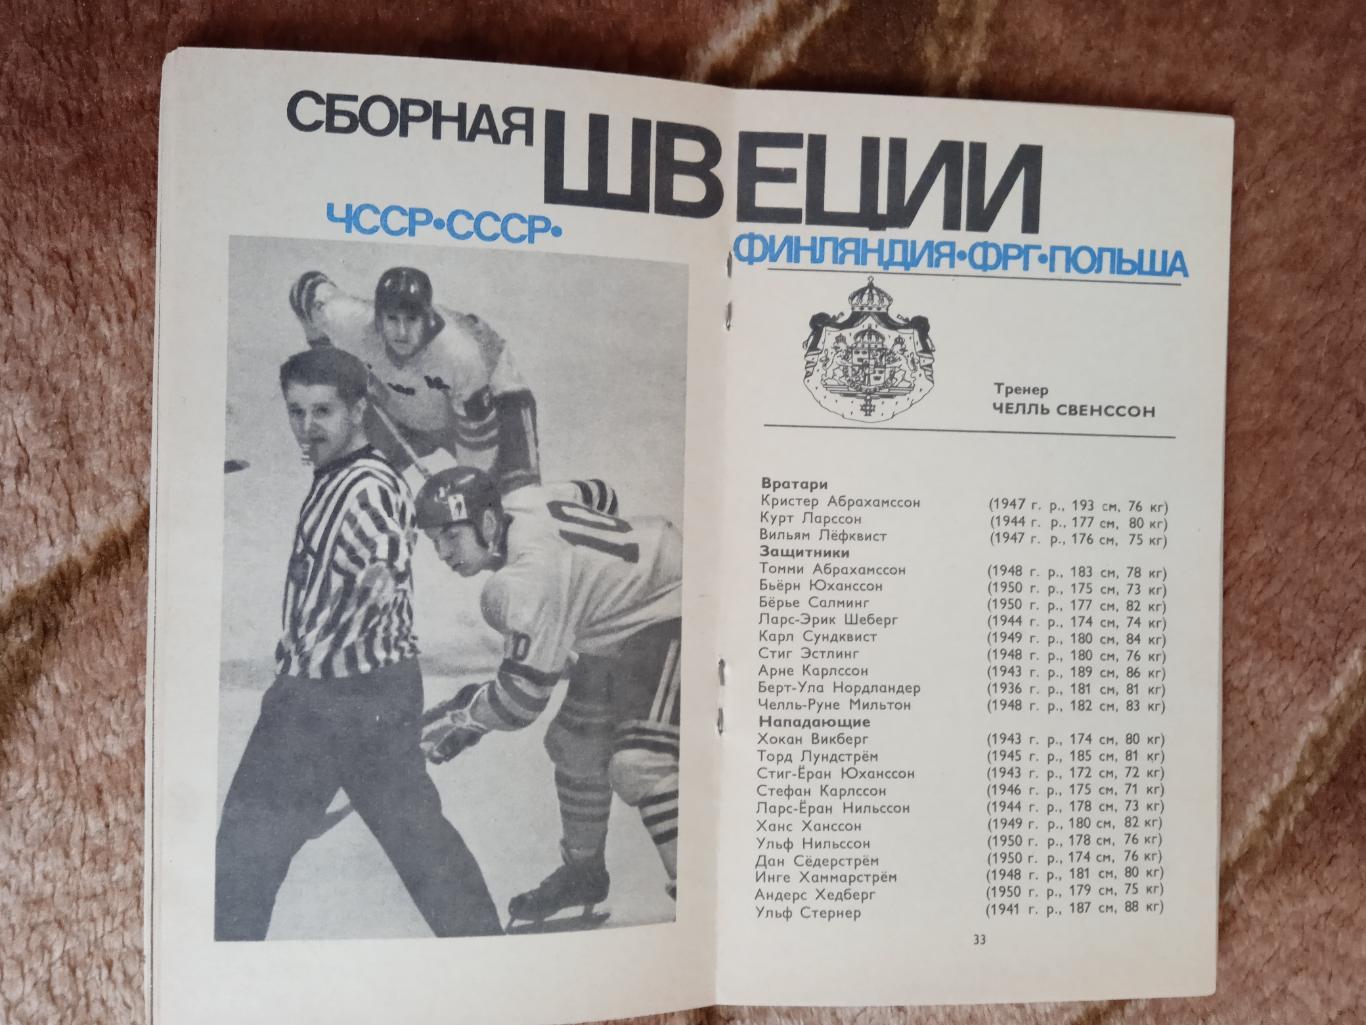 Чемпионат мира и Европы по хоккею 1973.Москва.СССР. (Общая). 1